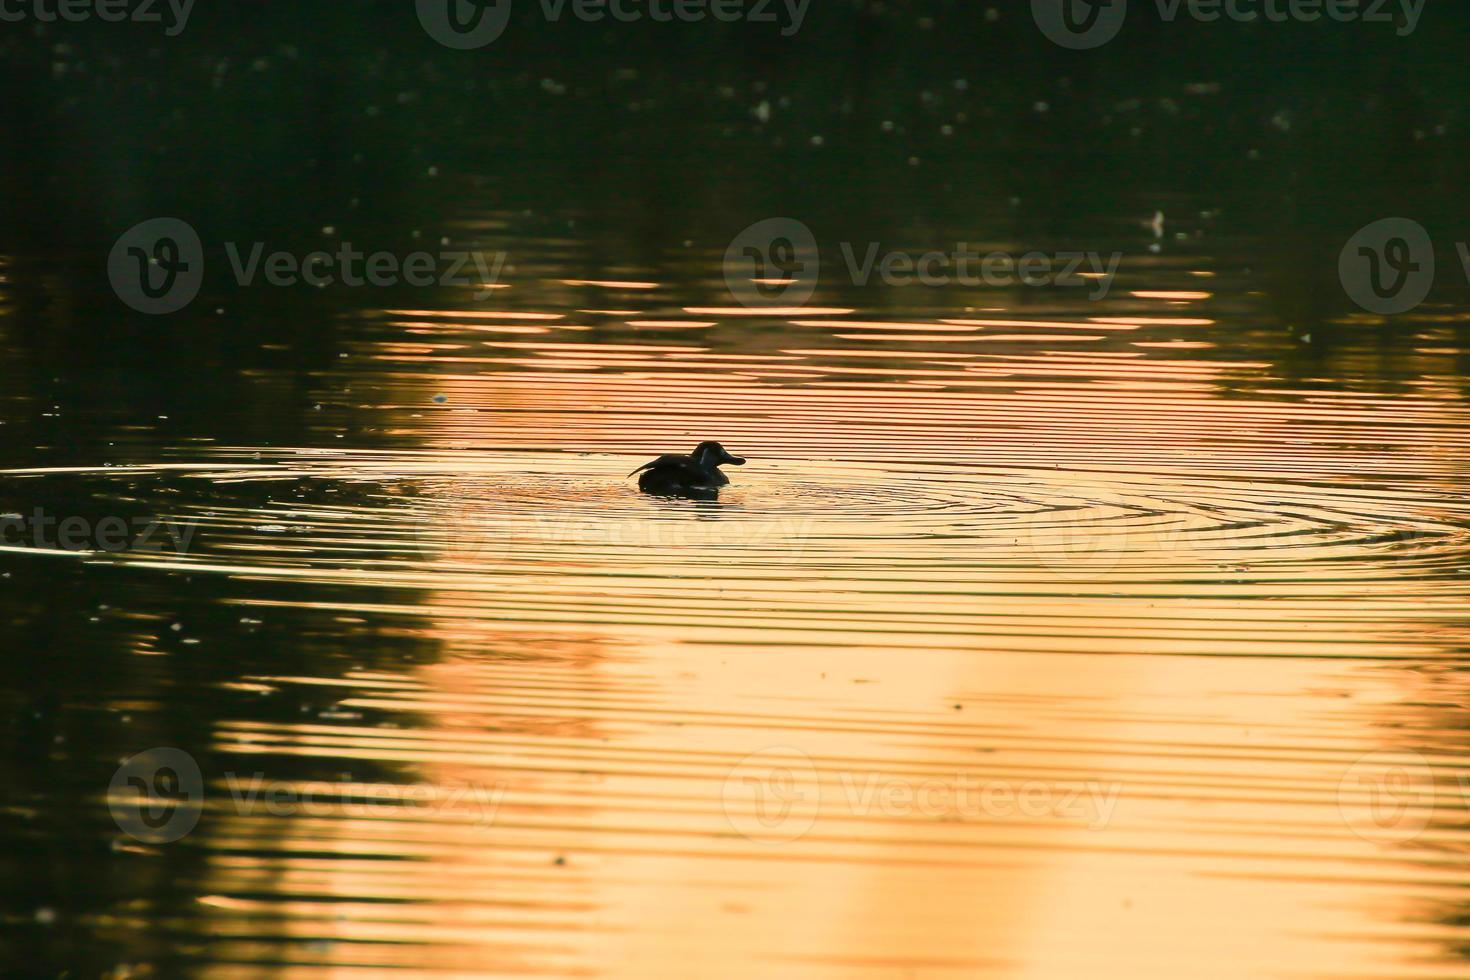 de wild gans vlotter in de avond meer terwijl de gouden licht weerspiegeld in de mooi water oppervlak. foto